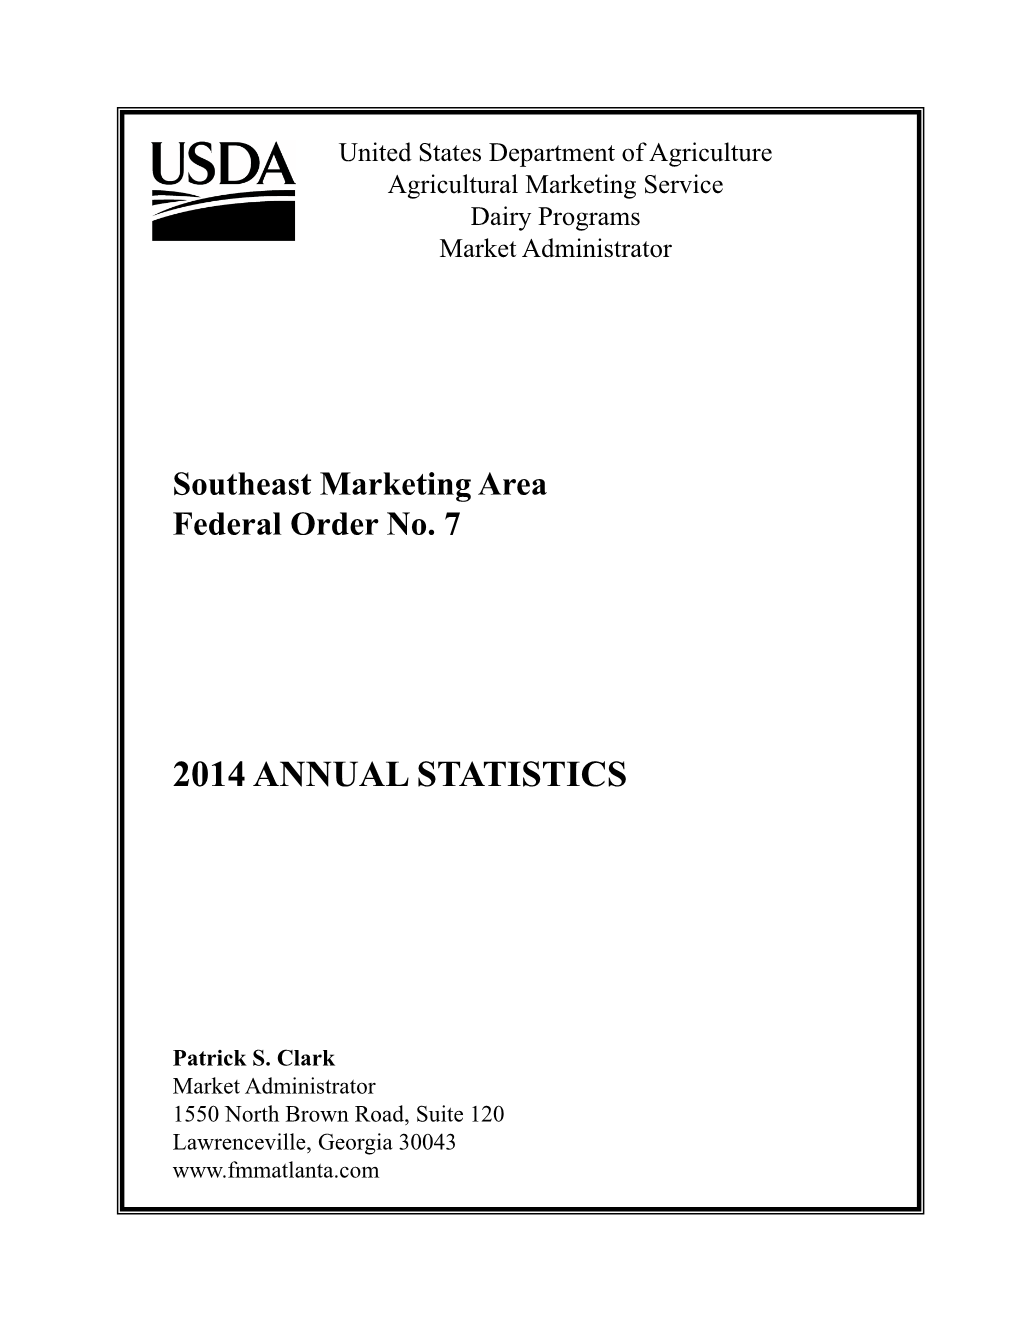 2014 Annual Statistics